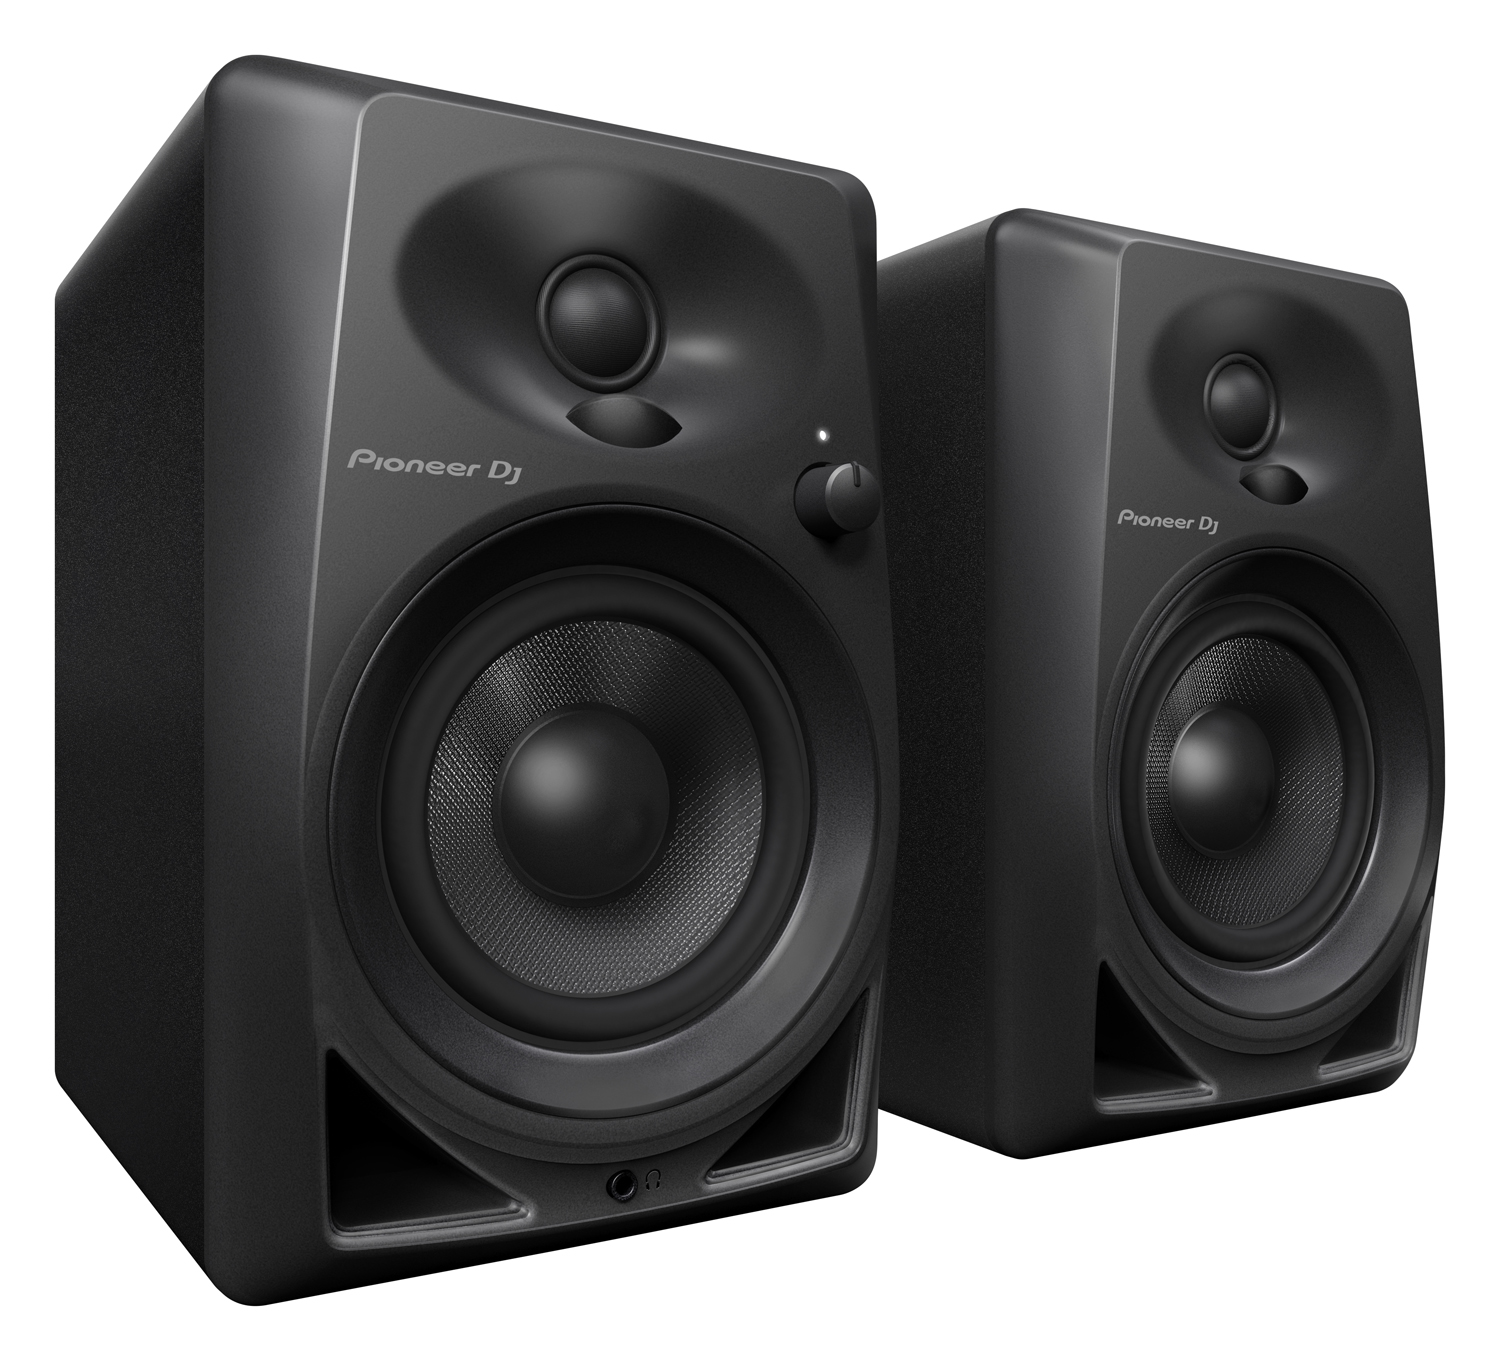 Nuevos monitores Pioneer DM-40 para DJs y productores